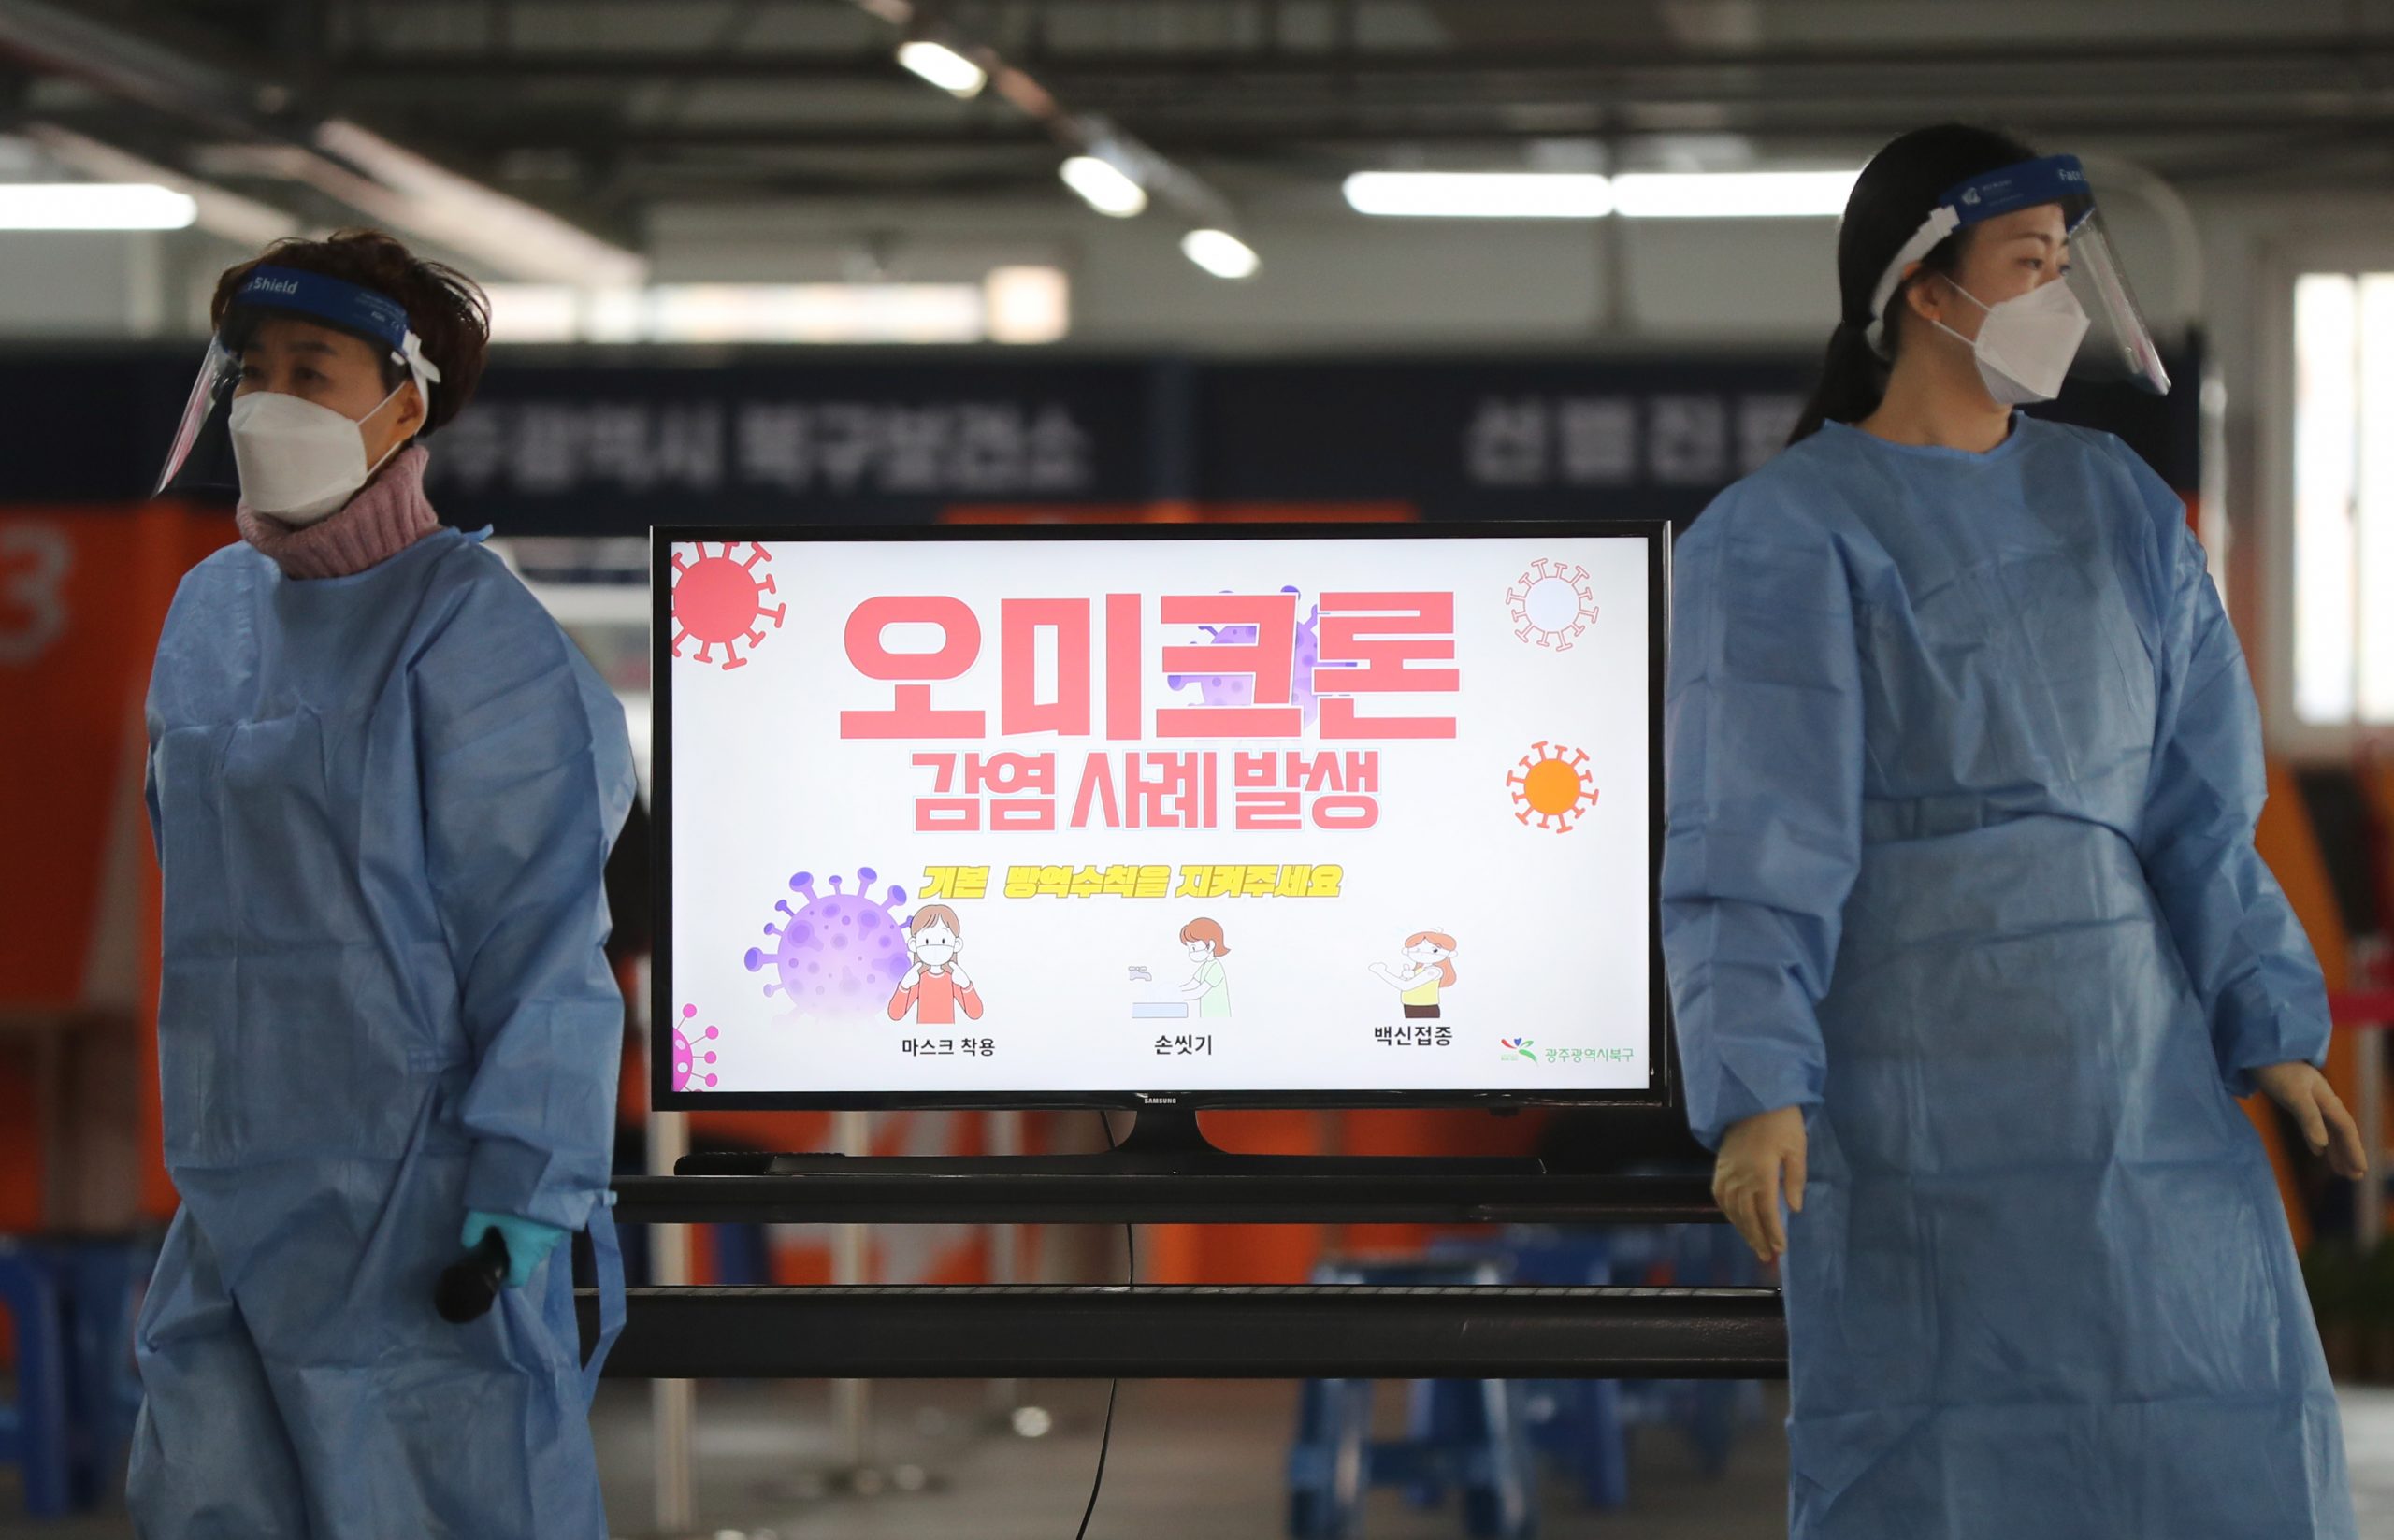  韩国疫情延烧 单日新增确诊、重症和死亡病例皆创新高  